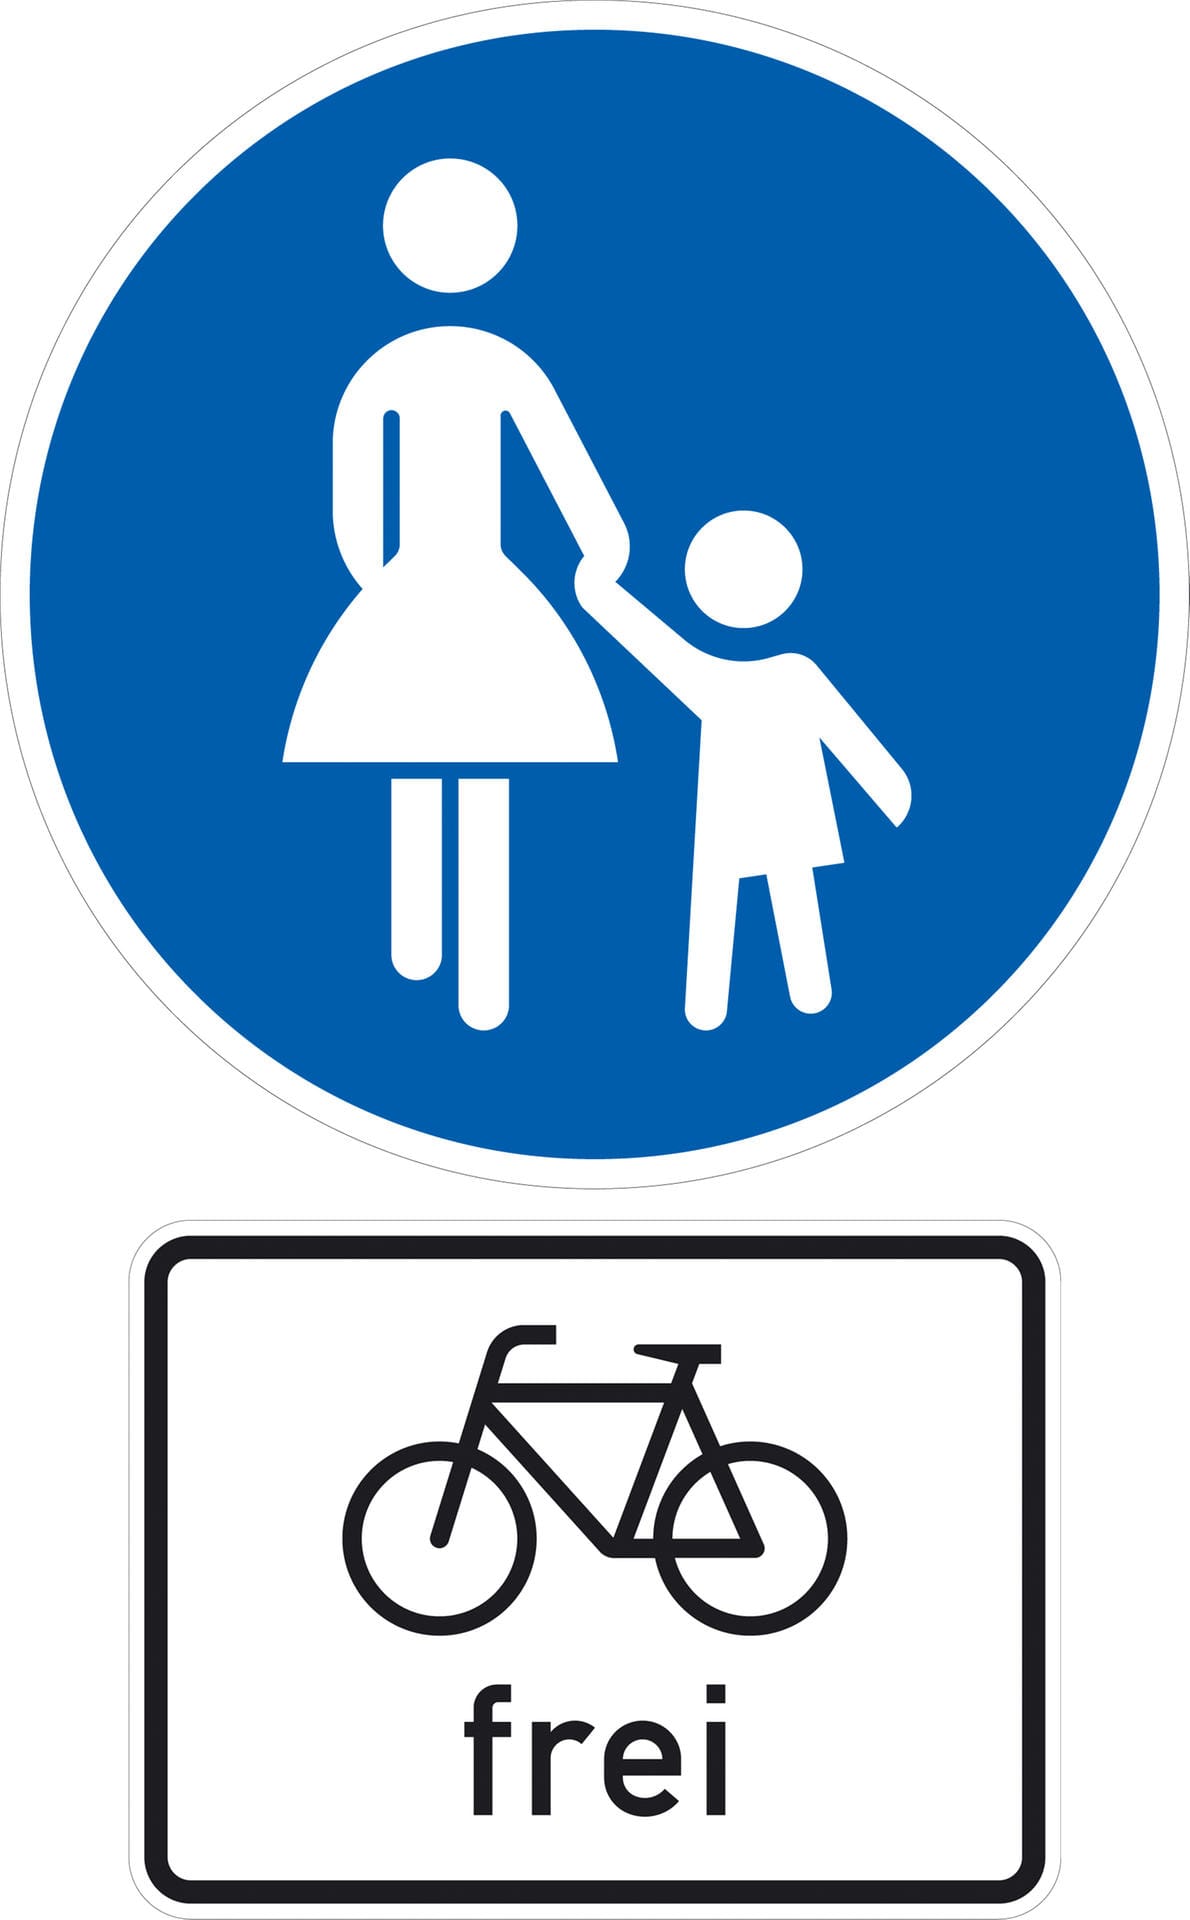 Das Radfahren auf Gehwegen kann mit dem Zusatzzeichen "Radfahrer frei" zugelassen sein. Radfahrer müssen dann Rücksicht auf Fußgänger nehmen – und dürfen höchstens in Schrittgeschwindigkeit (etwa 4-7 km/h) fahren. Durch das Schild sind sie nicht verpflichtet den Gehweg zu nutzen, sie dürfen also auch auf der Fahrbahn fahren.